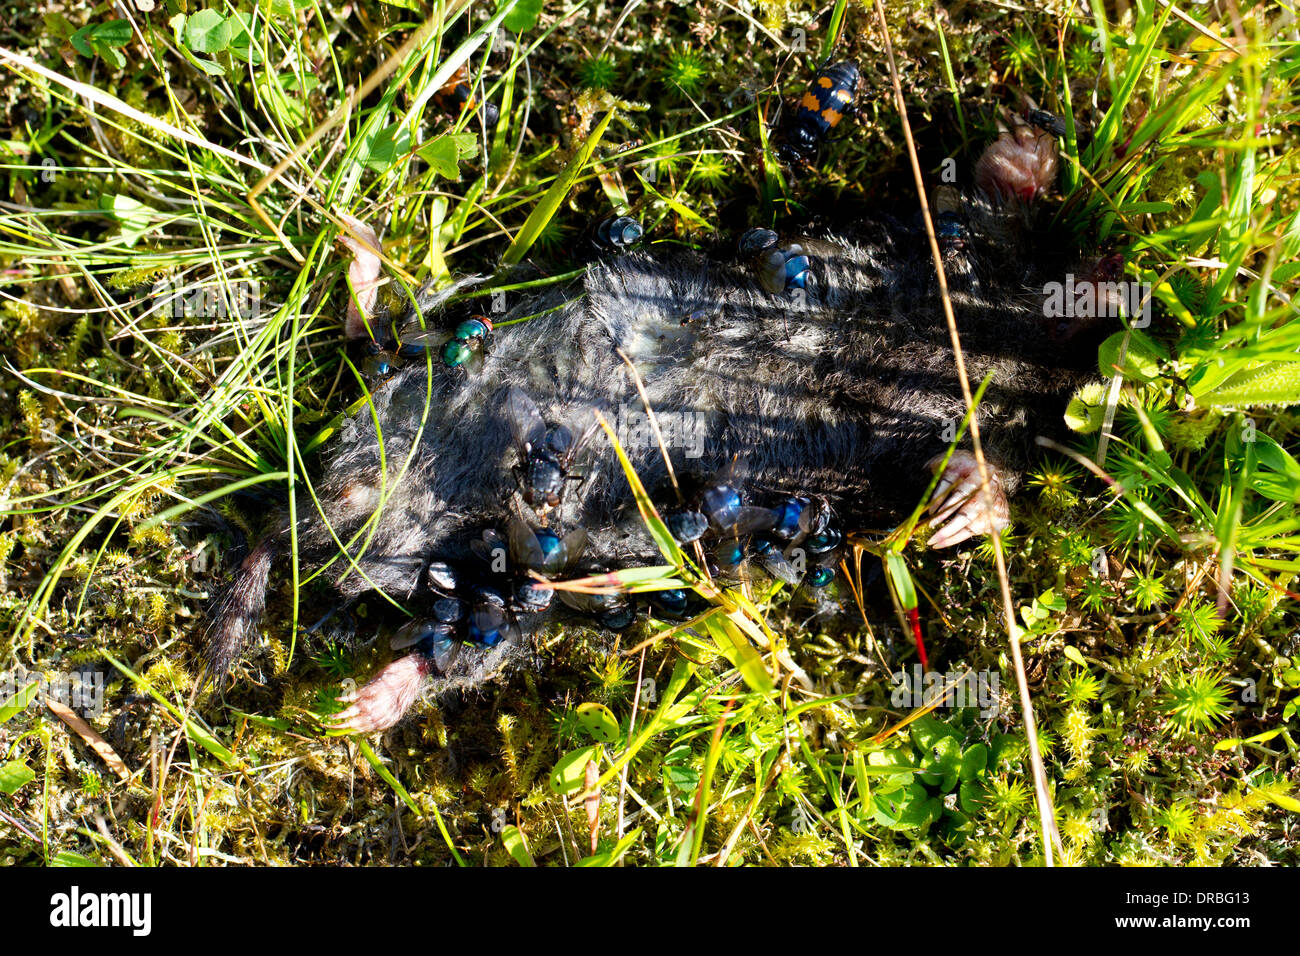 Morto Mole europea (Talpa europaea) attirare mosche e coleotteri di seppellimento di Powys, Galles. Agosto. Foto Stock